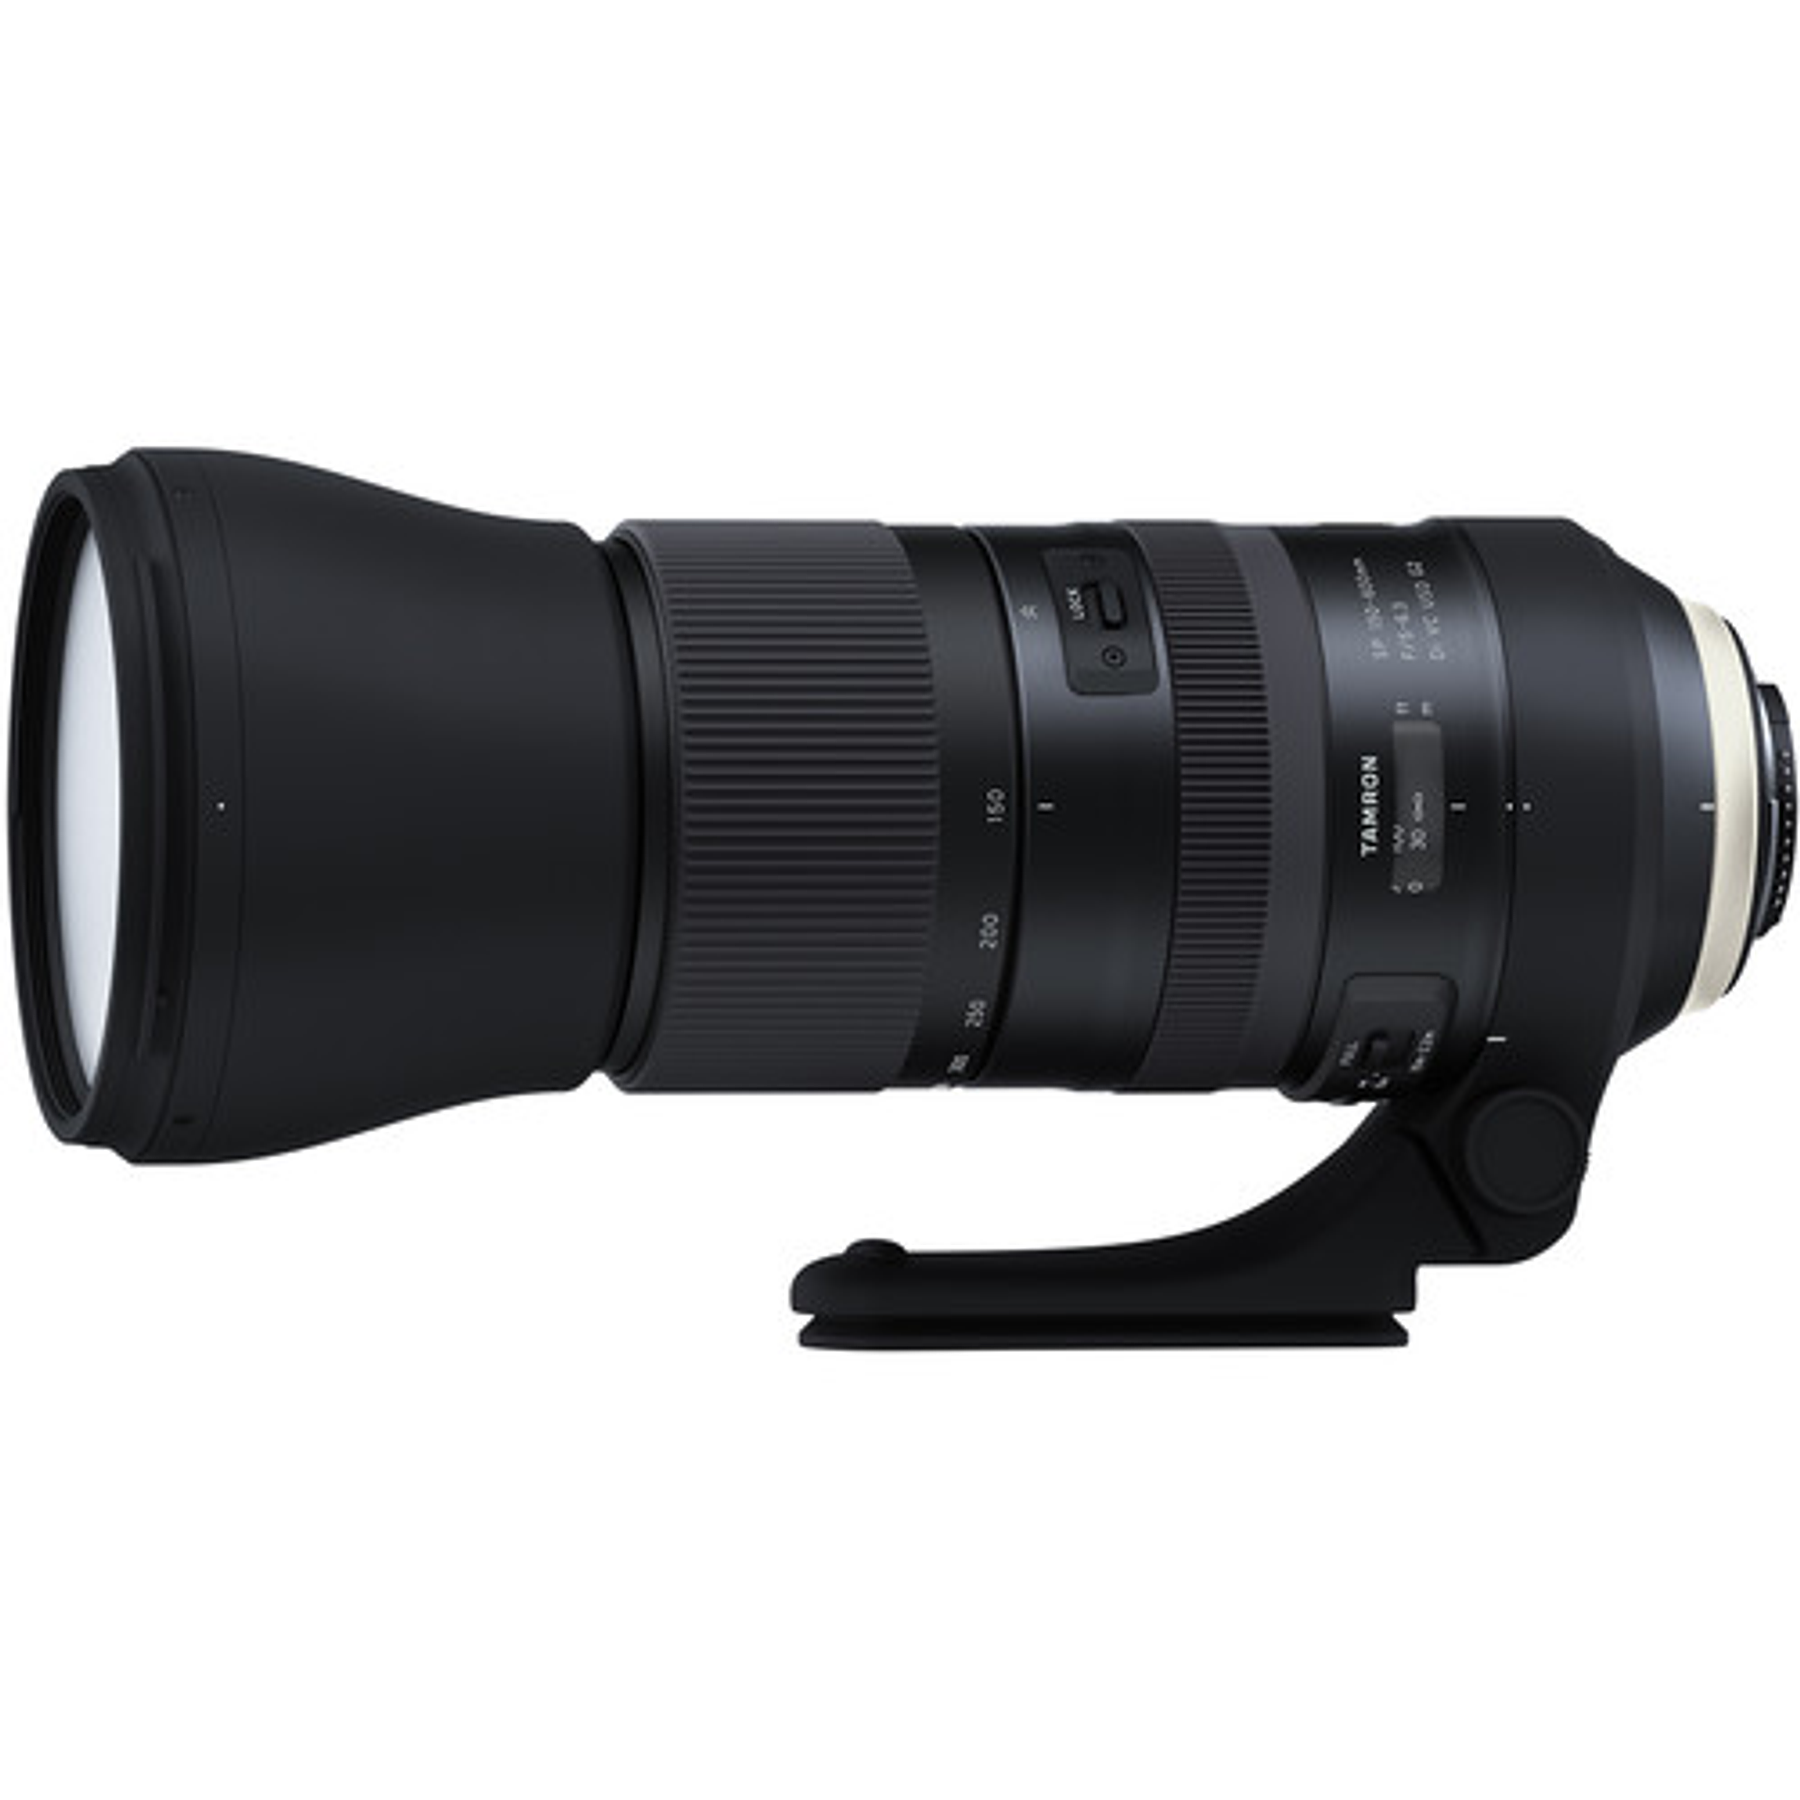 Tamron Lente SP 150-600mm f/5-6.3 G2 Di VC USD G2 para Canon/Nikon